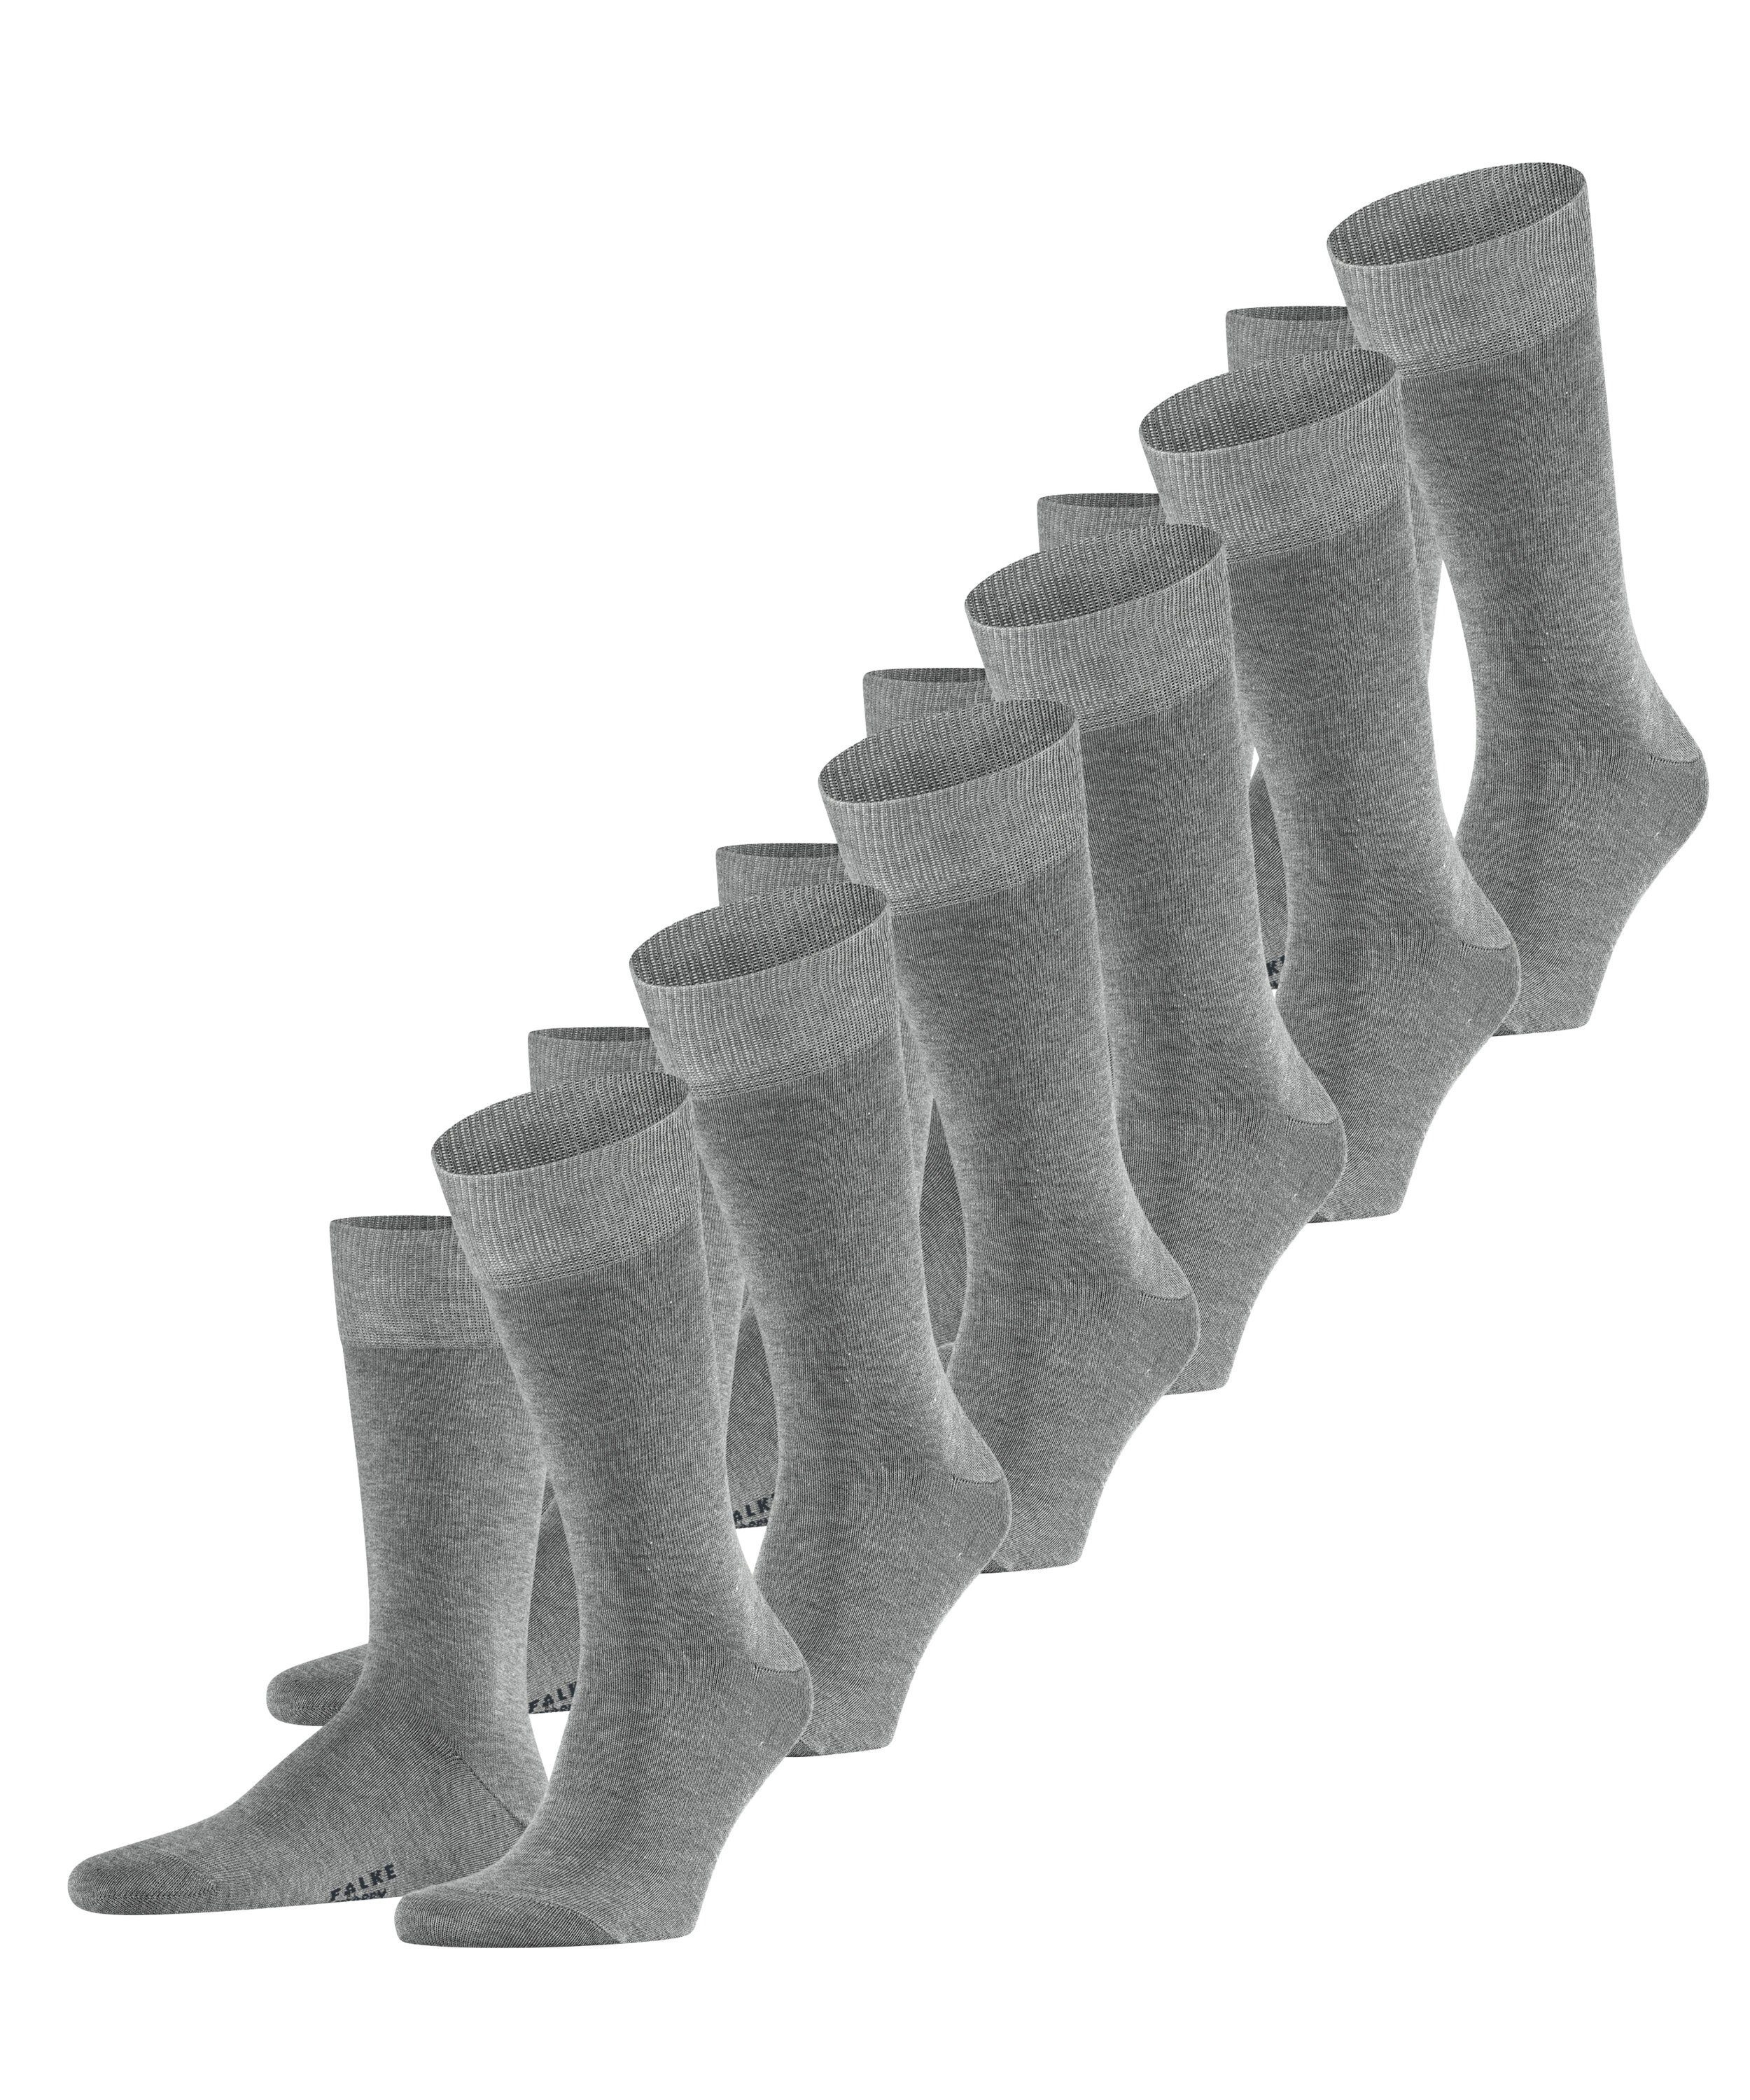 FALKE Socken Happy 6-Pack (6-Paar) light greymel. (3390)